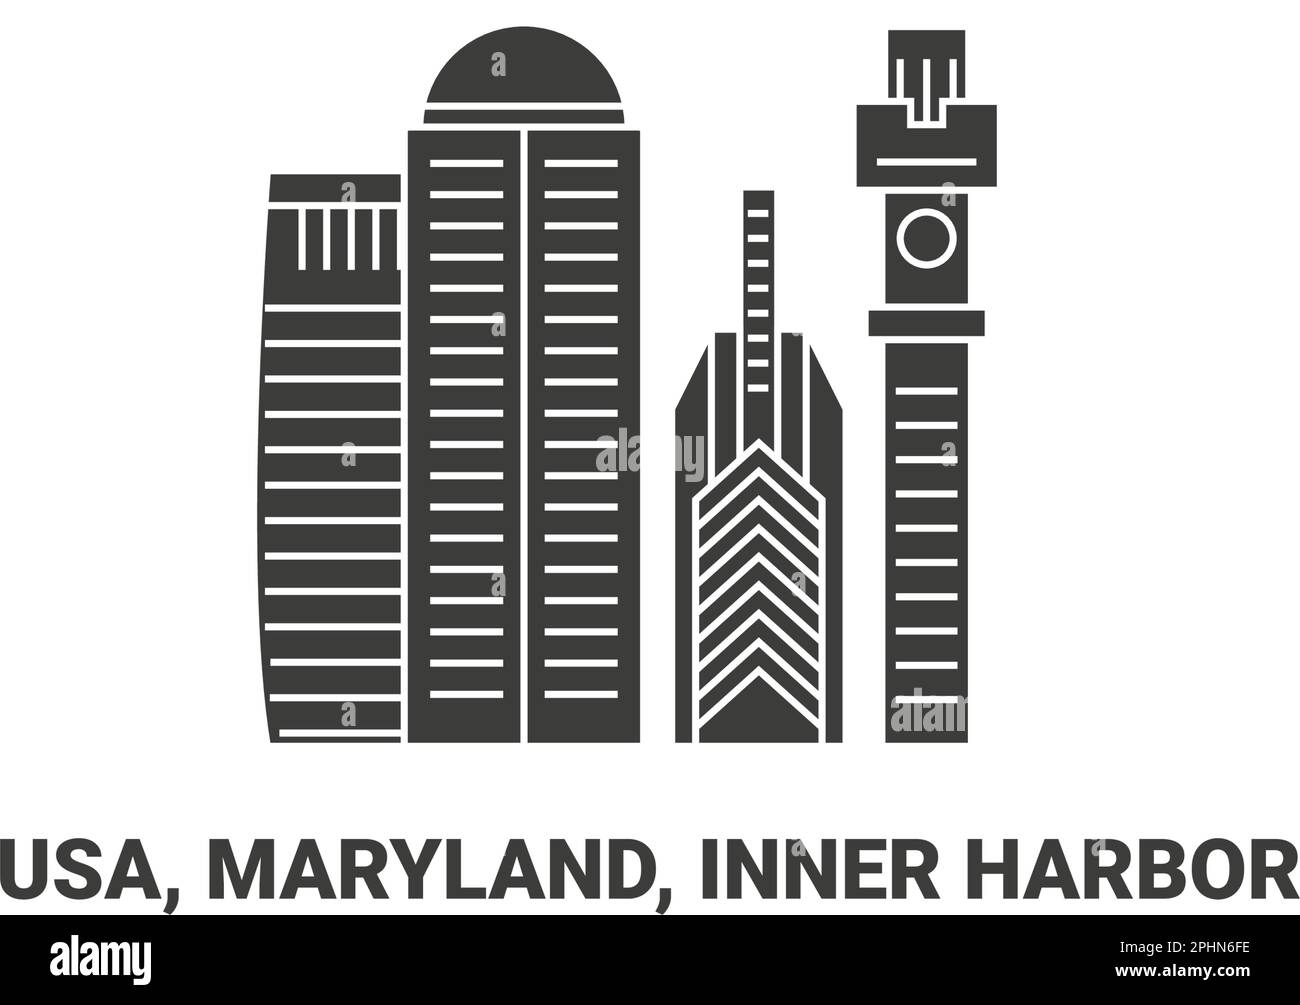 United States, Maryland, Inner Harbor, travel landmark vector illustration Stock Vector